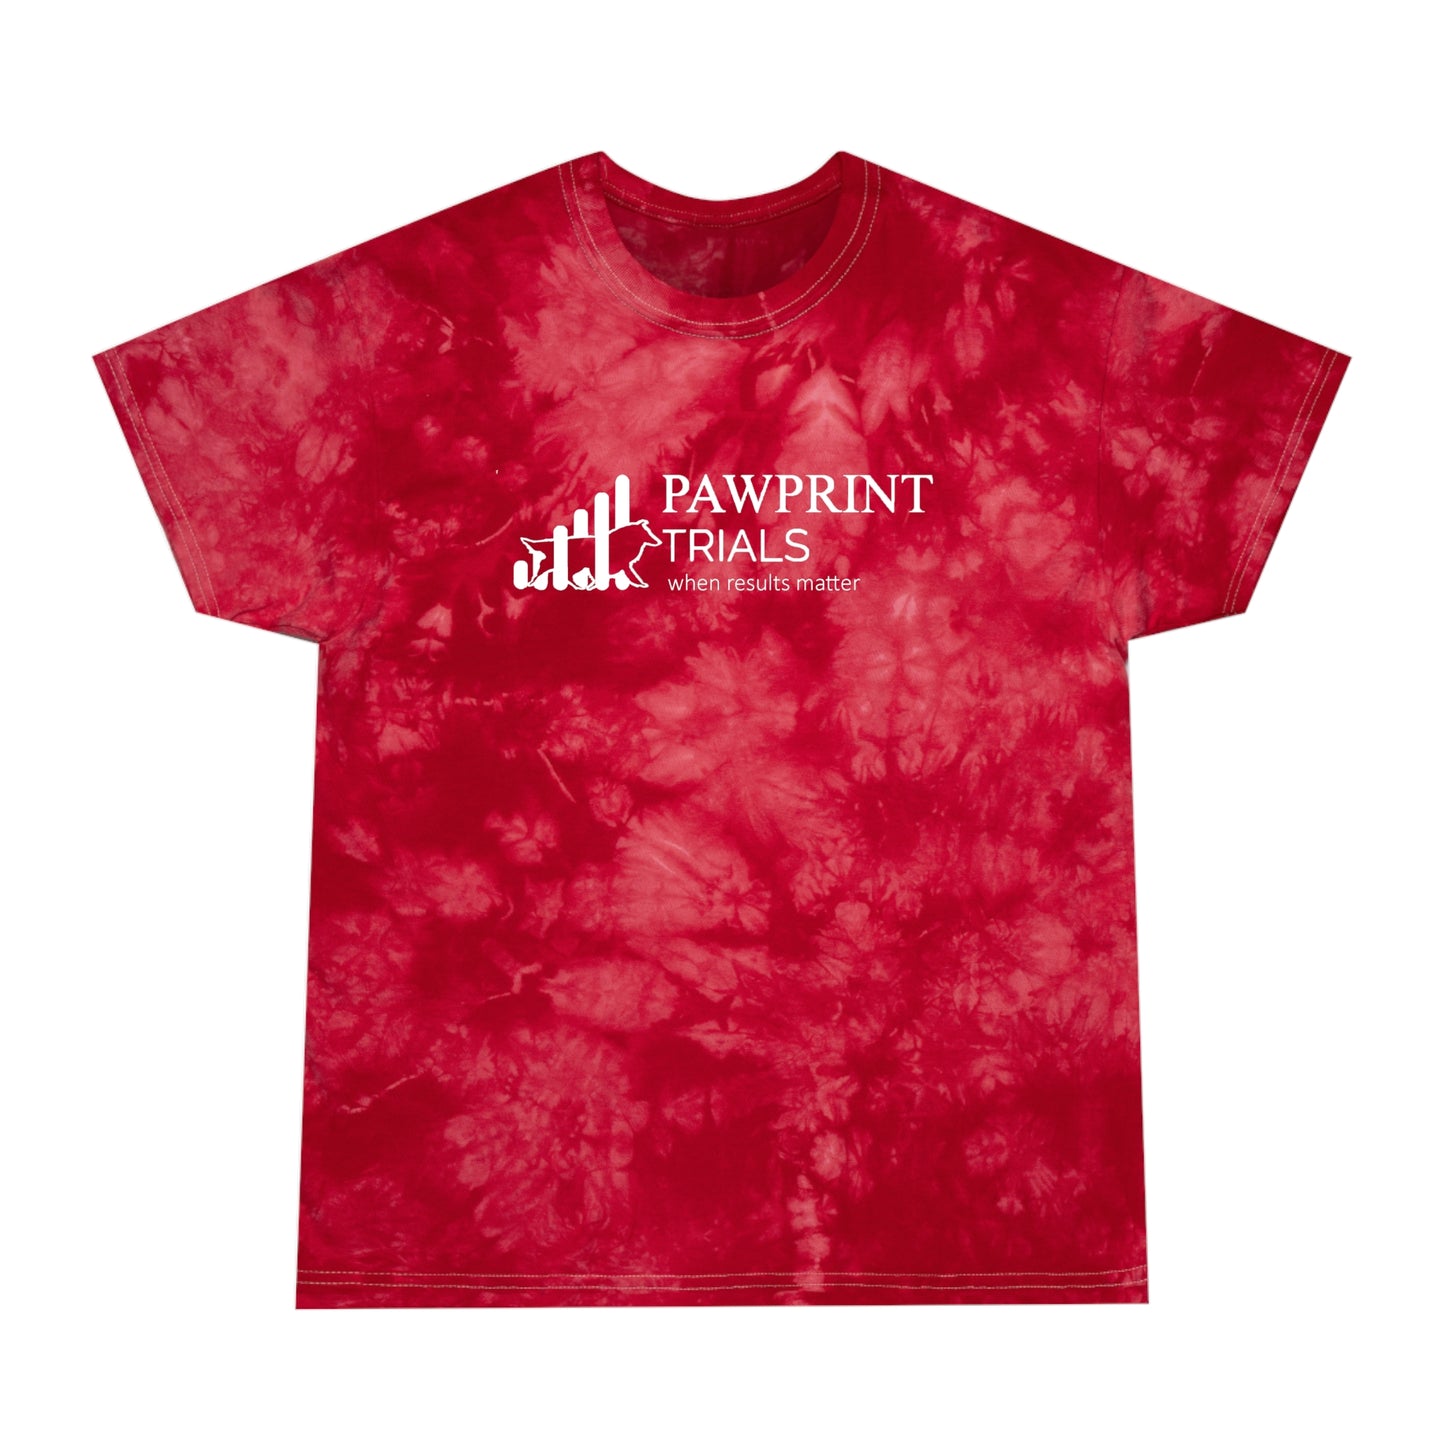 PawPrint Trials Tie-Dye Tee, Red